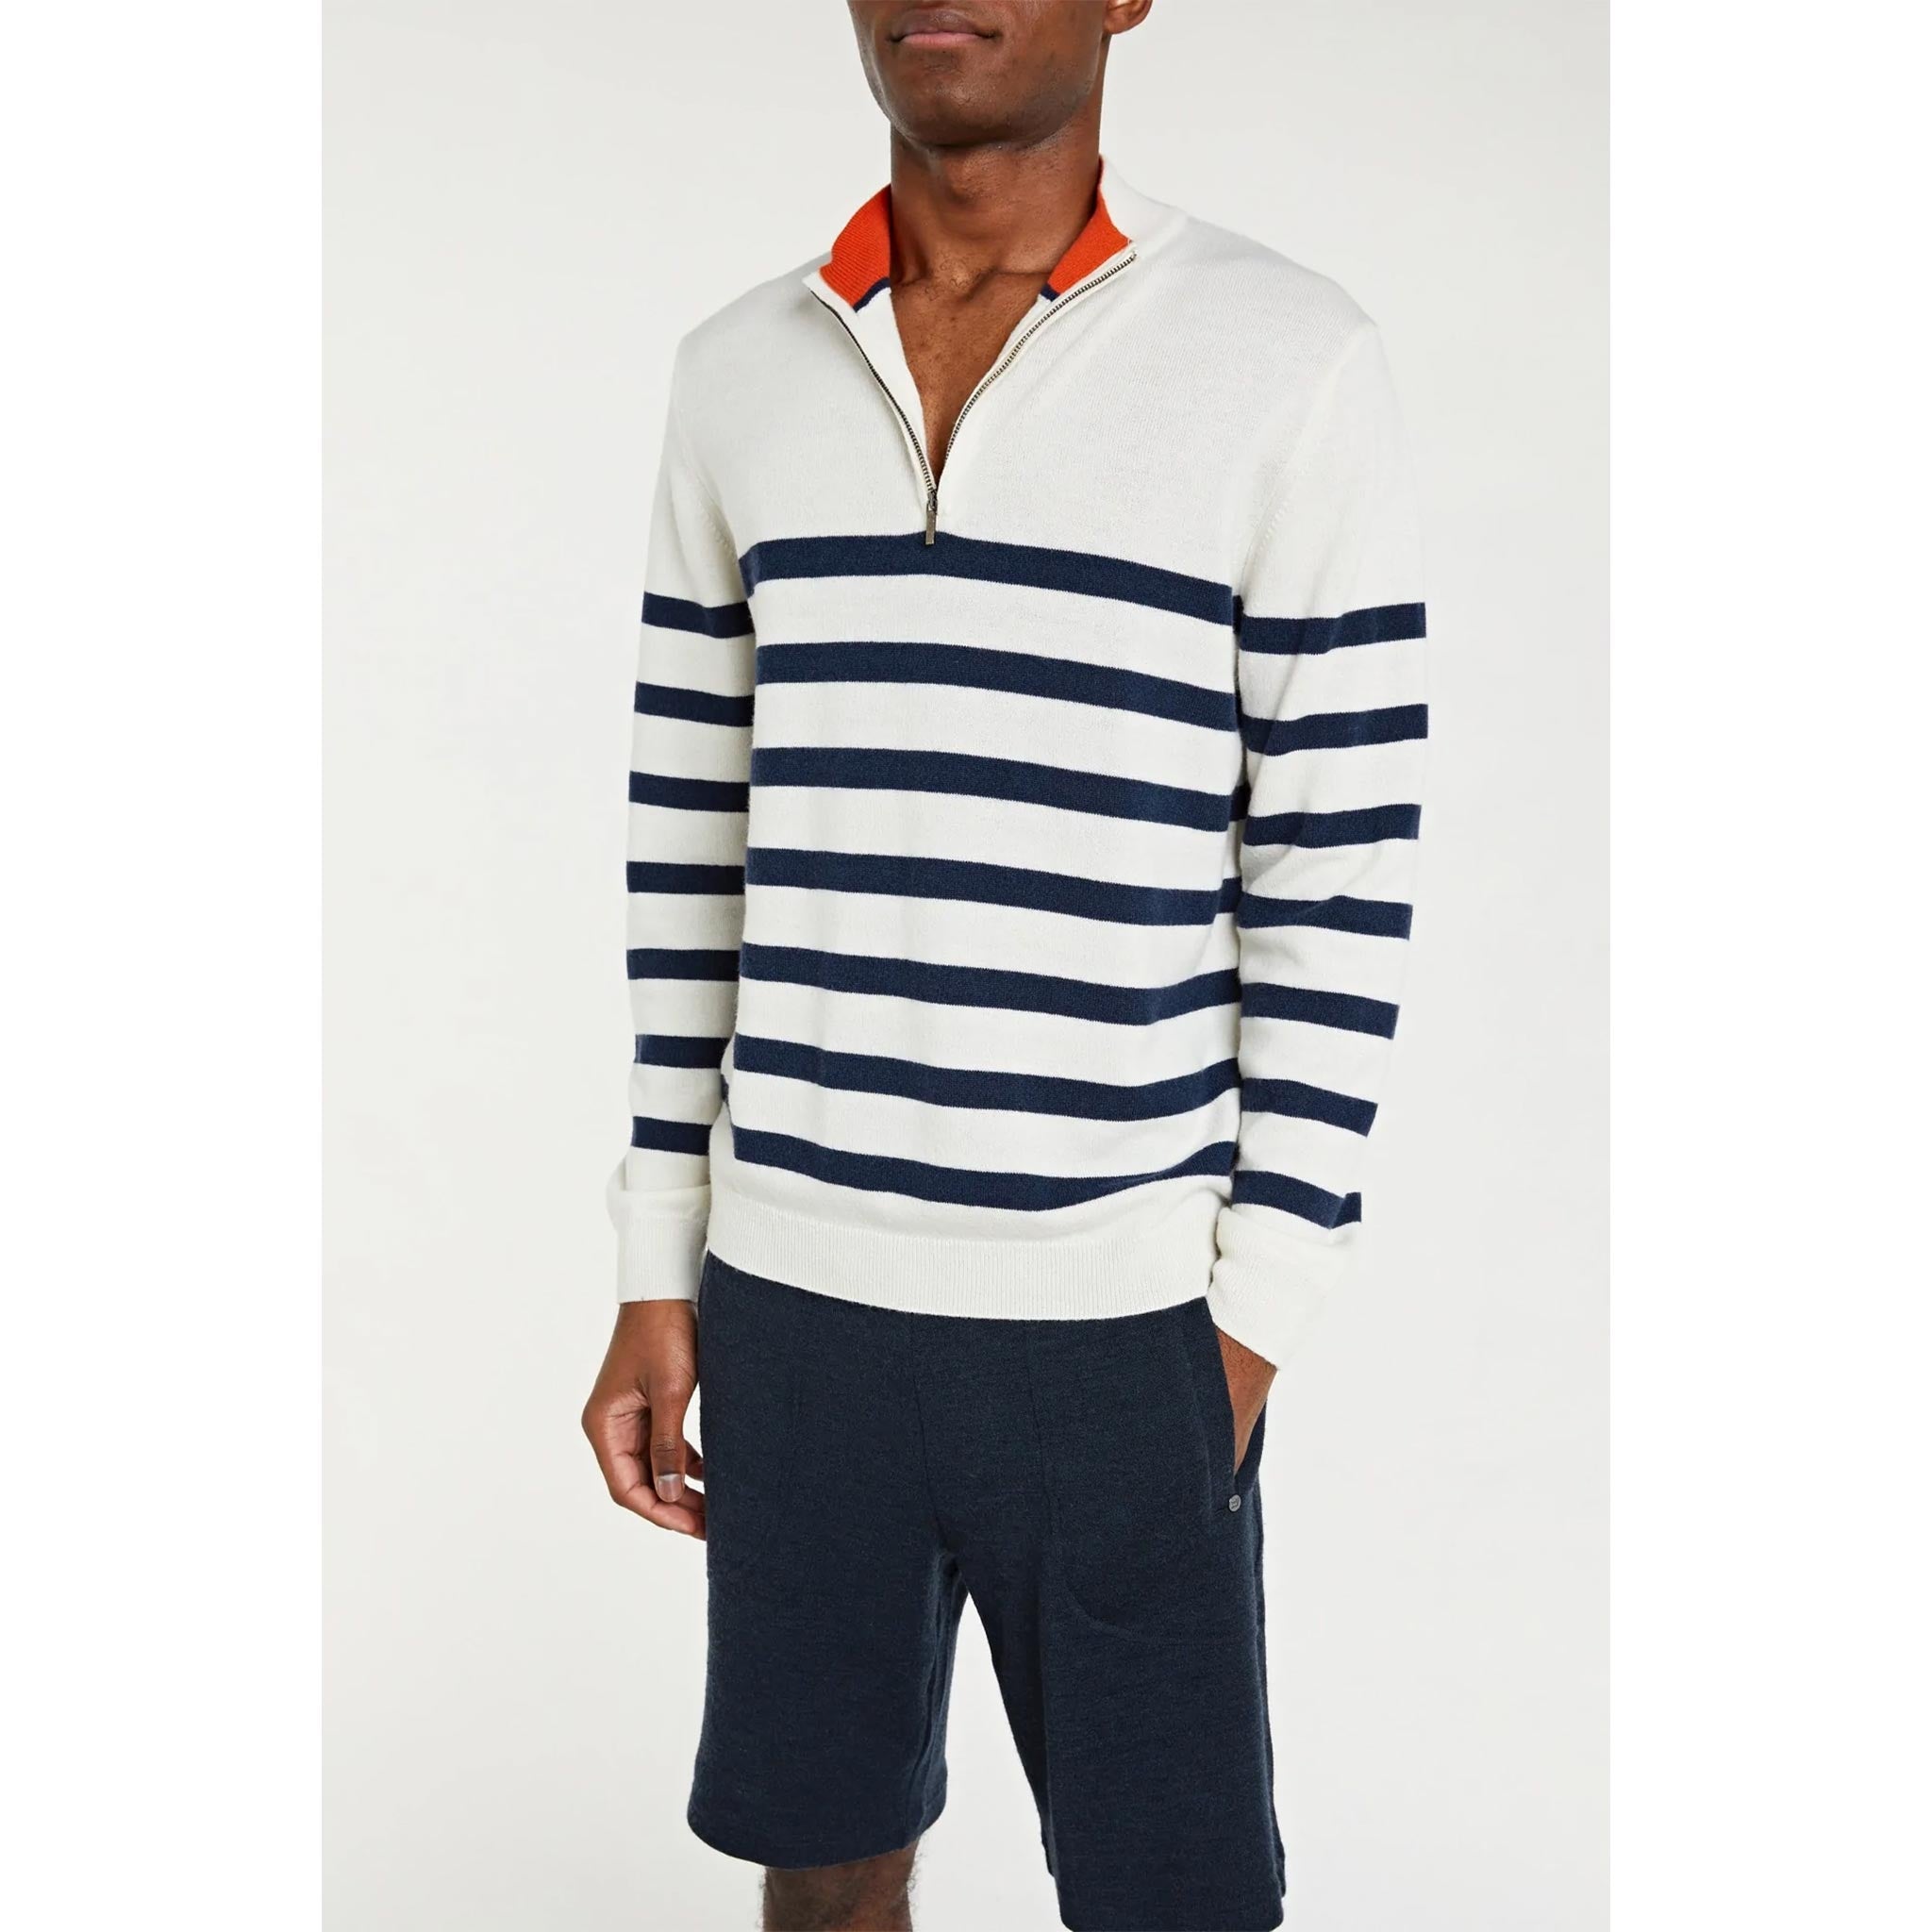 Gullholmen Zip-Up Sweater in White/Navy Stripes